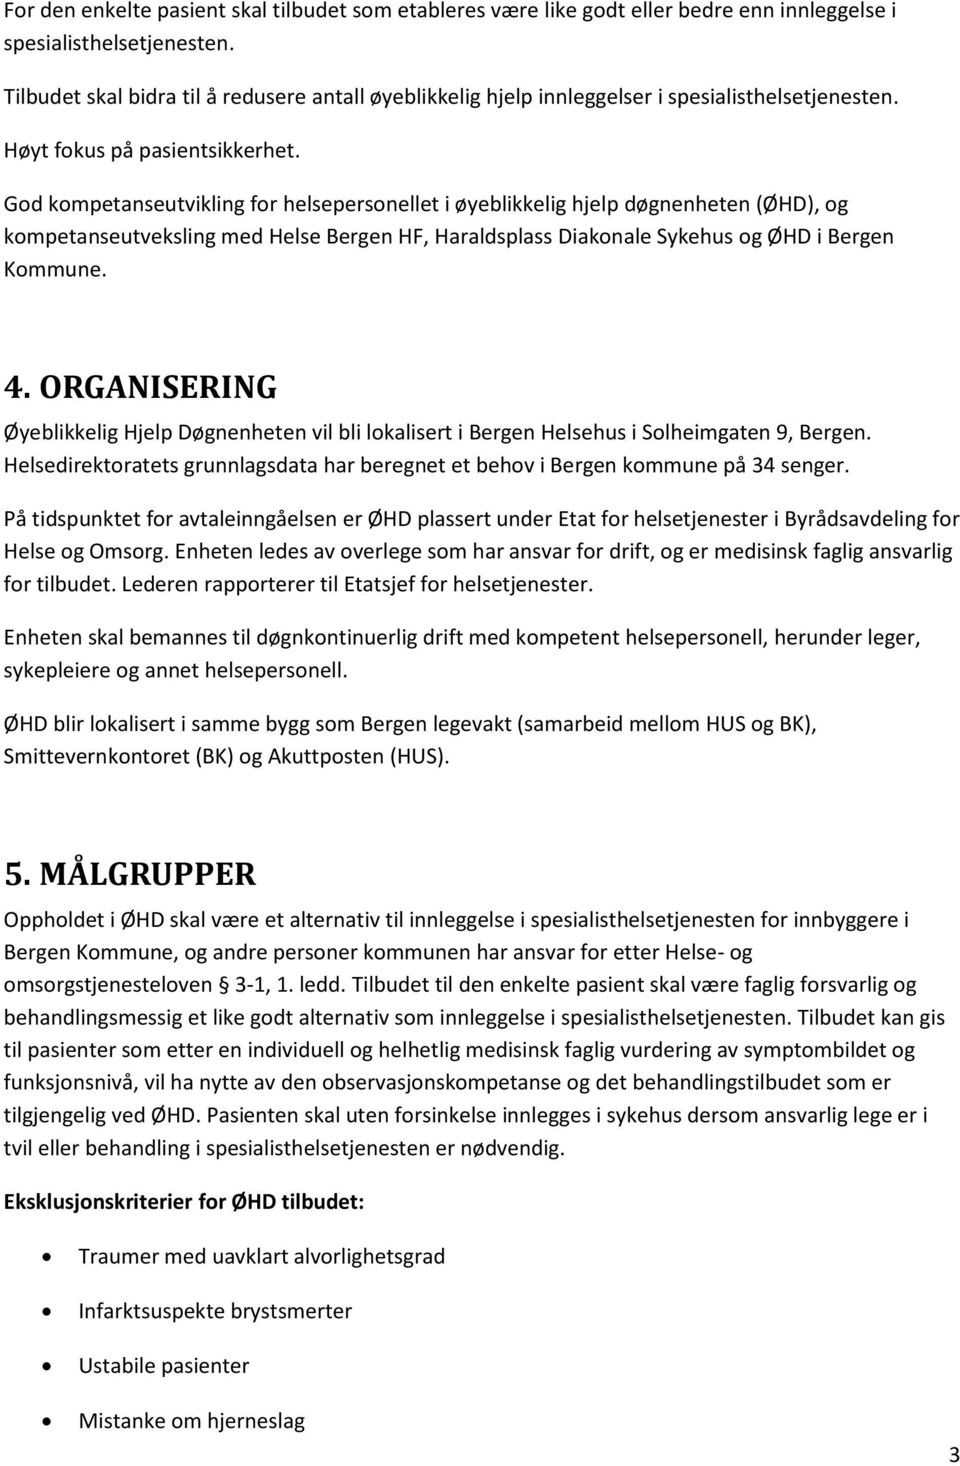 God kompetanseutvikling for helsepersonellet i øyeblikkelig hjelp døgnenheten (ØHD), og kompetanseutveksling med Helse Bergen HF, Haraldsplass Diakonale Sykehus og ØHD i Bergen Kommune. 4.